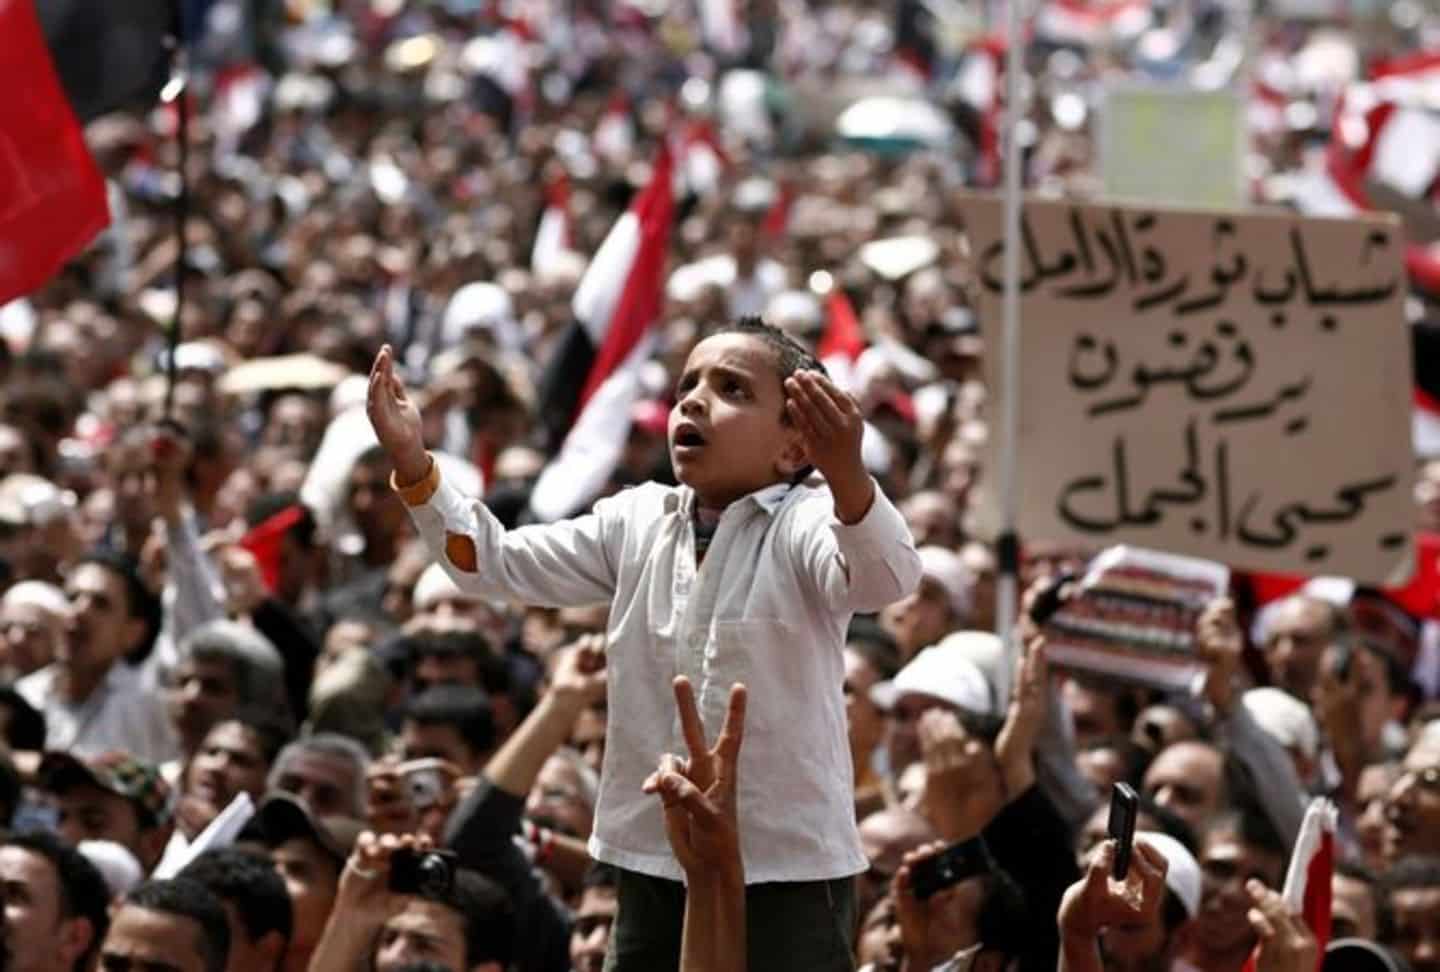 Primavera Árabe - o que foram as revoluções políticas no mundo árabe